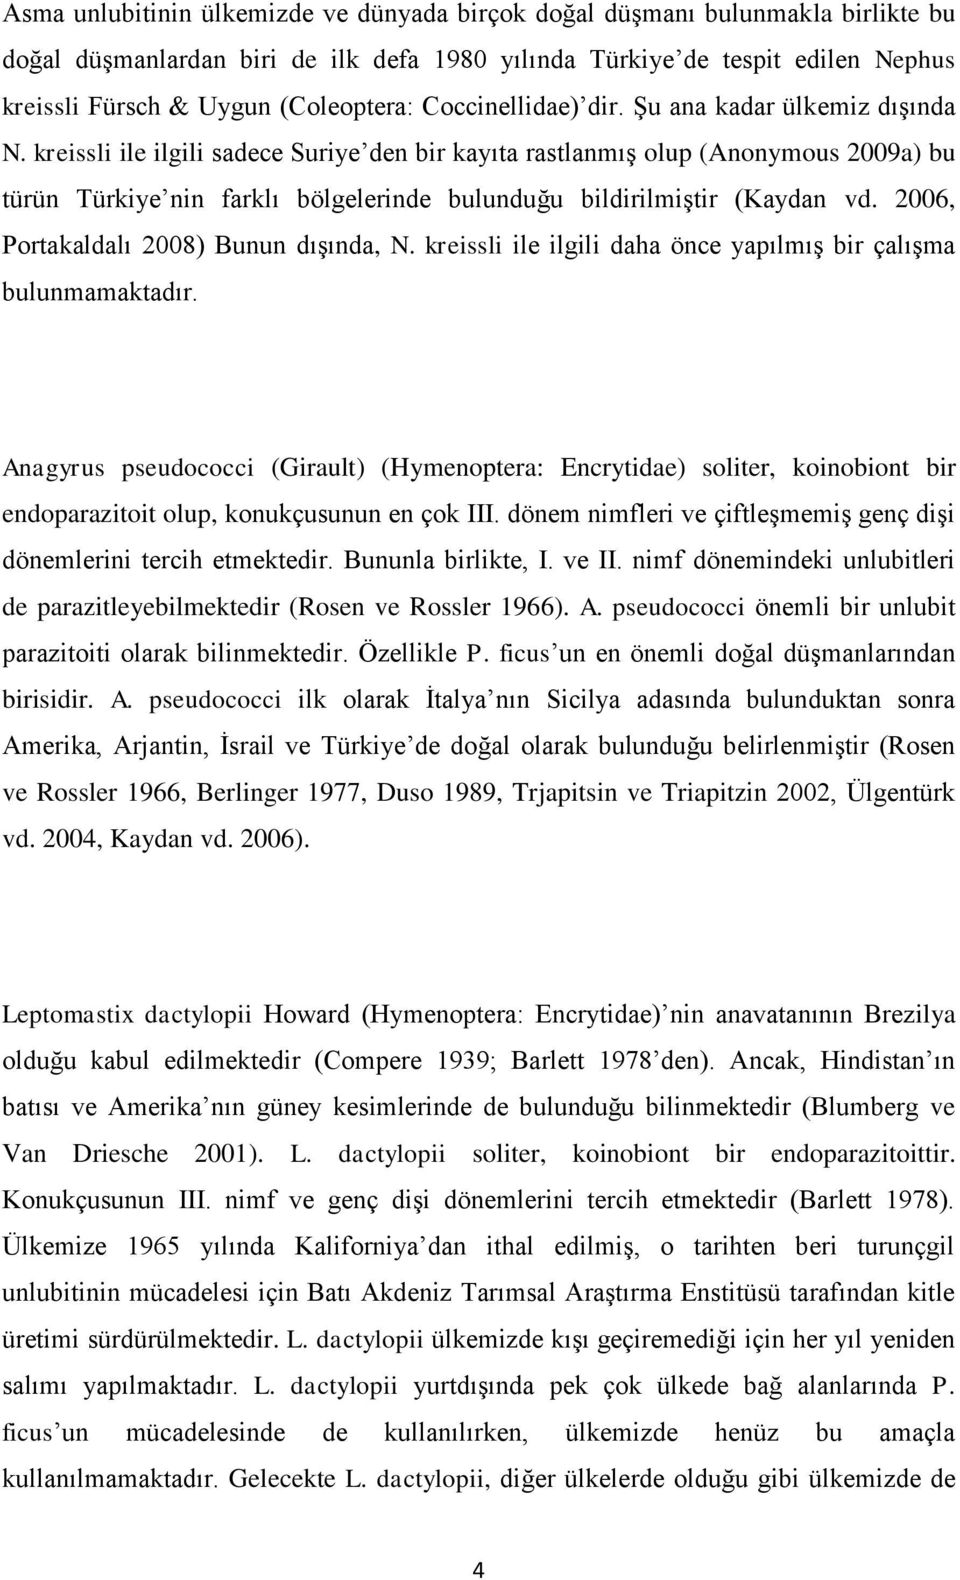 kreissli ile ilgili sadece Suriye den bir kayıta rastlanmış olup (Anonymous 2009a) bu türün Türkiye nin farklı bölgelerinde bulunduğu bildirilmiştir (Kaydan vd.